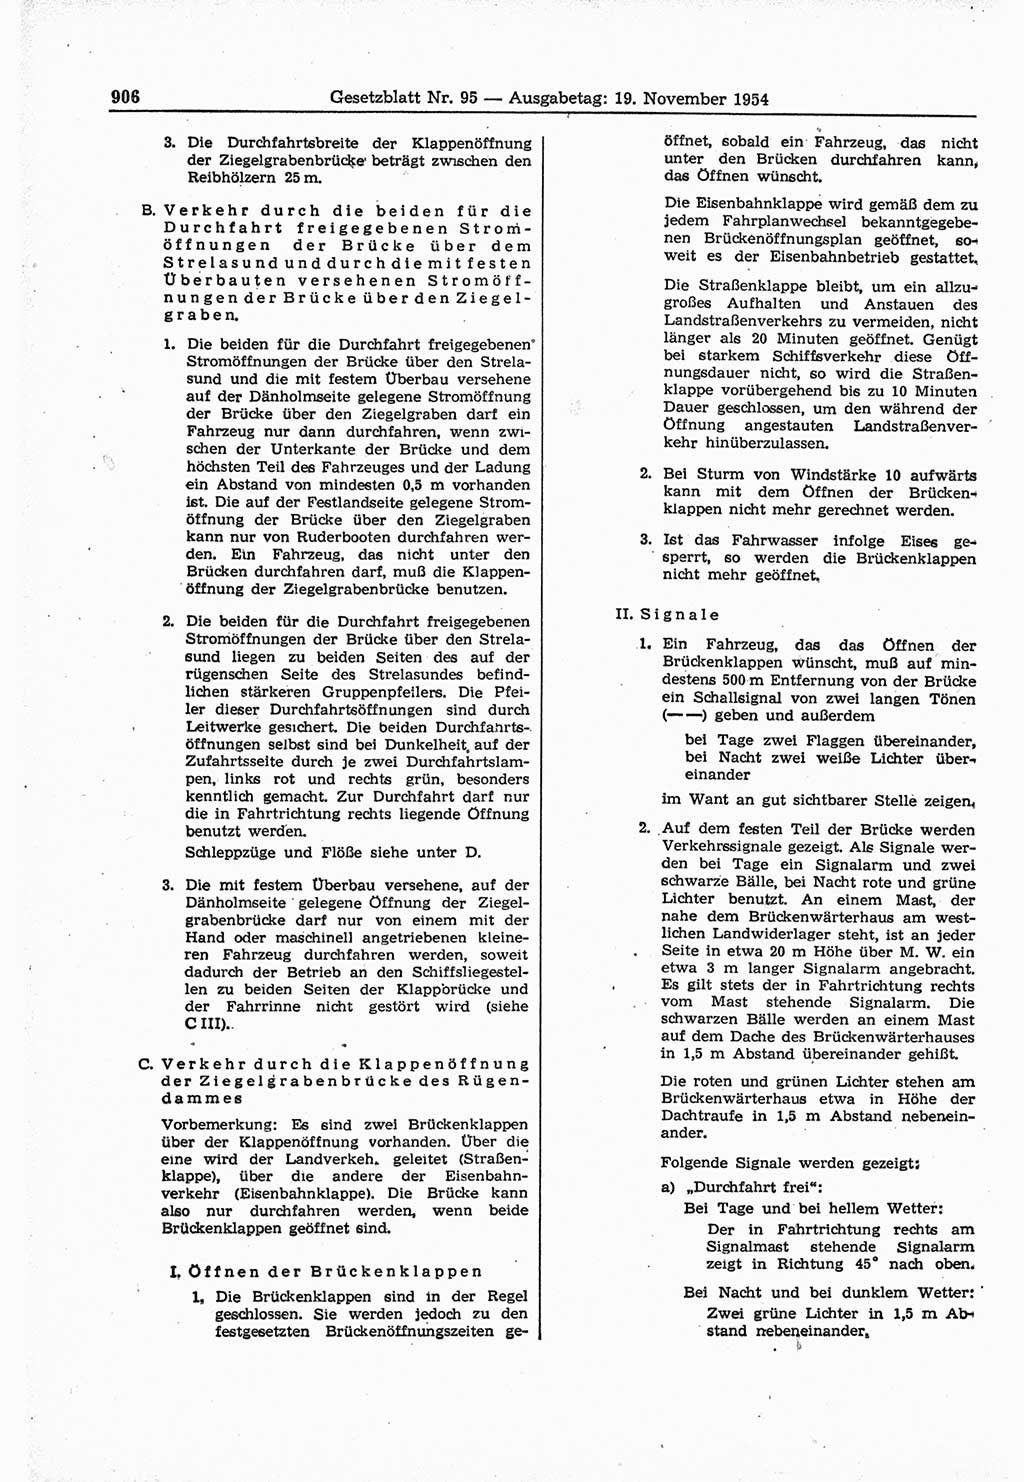 Gesetzblatt (GBl.) der Deutschen Demokratischen Republik (DDR) 1954, Seite 906 (GBl. DDR 1954, S. 906)